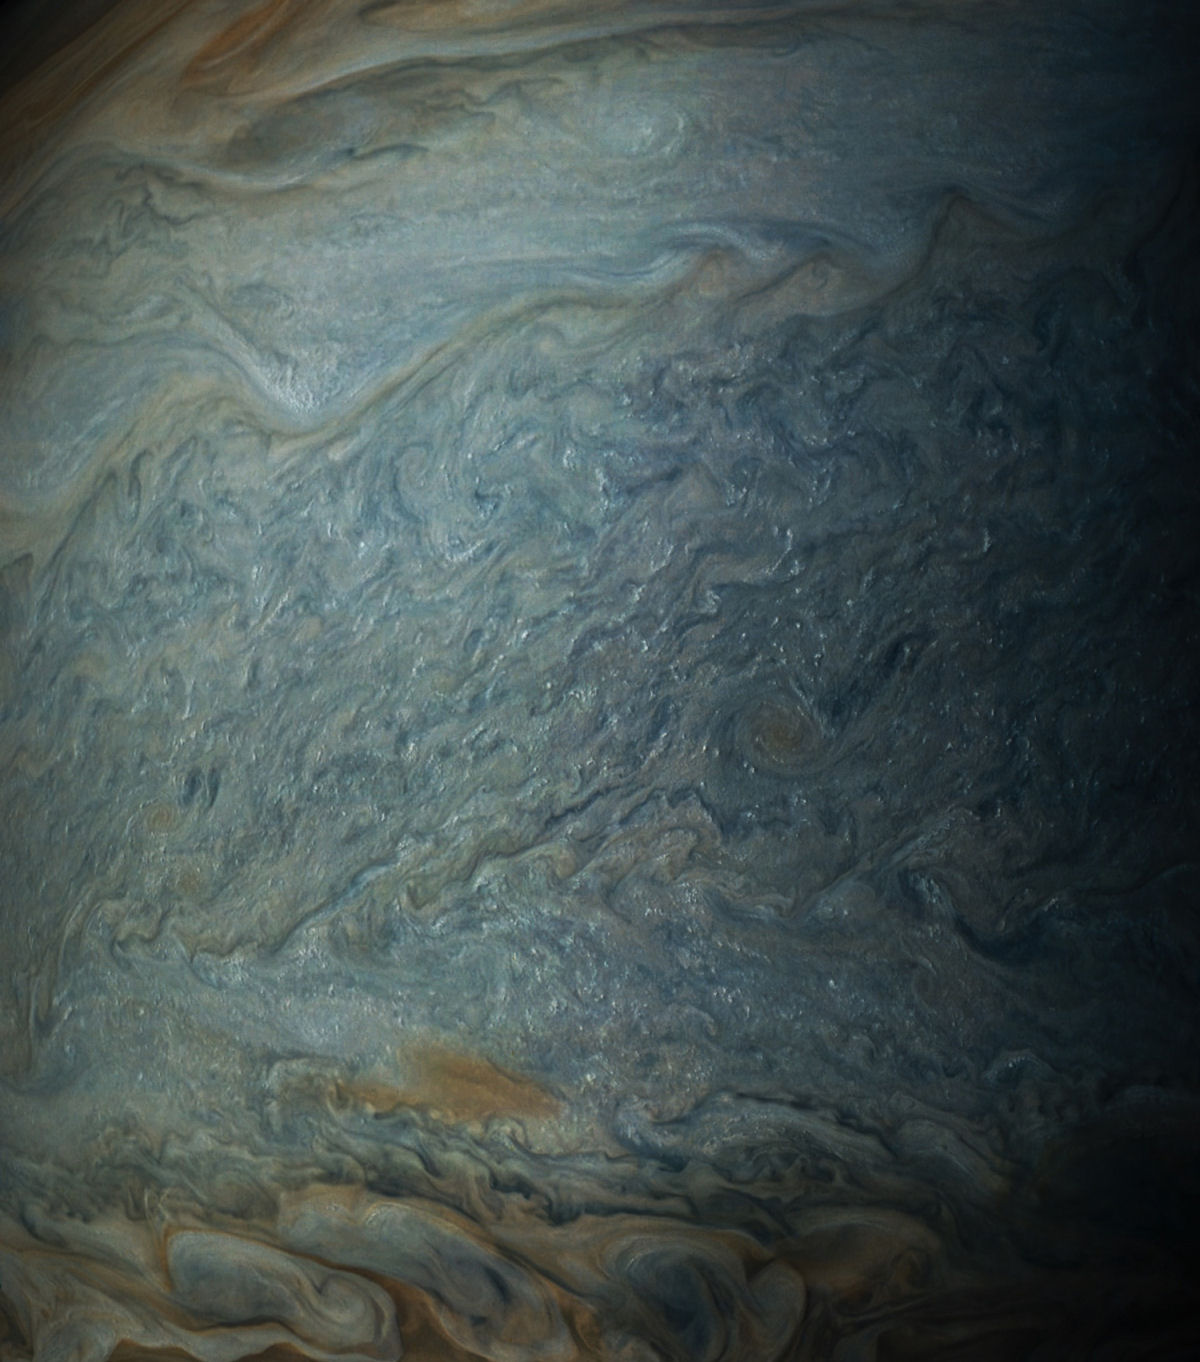 Imagens de close-up de Jpiter revelam uma paisagem impressionista de gases turbulentos 03